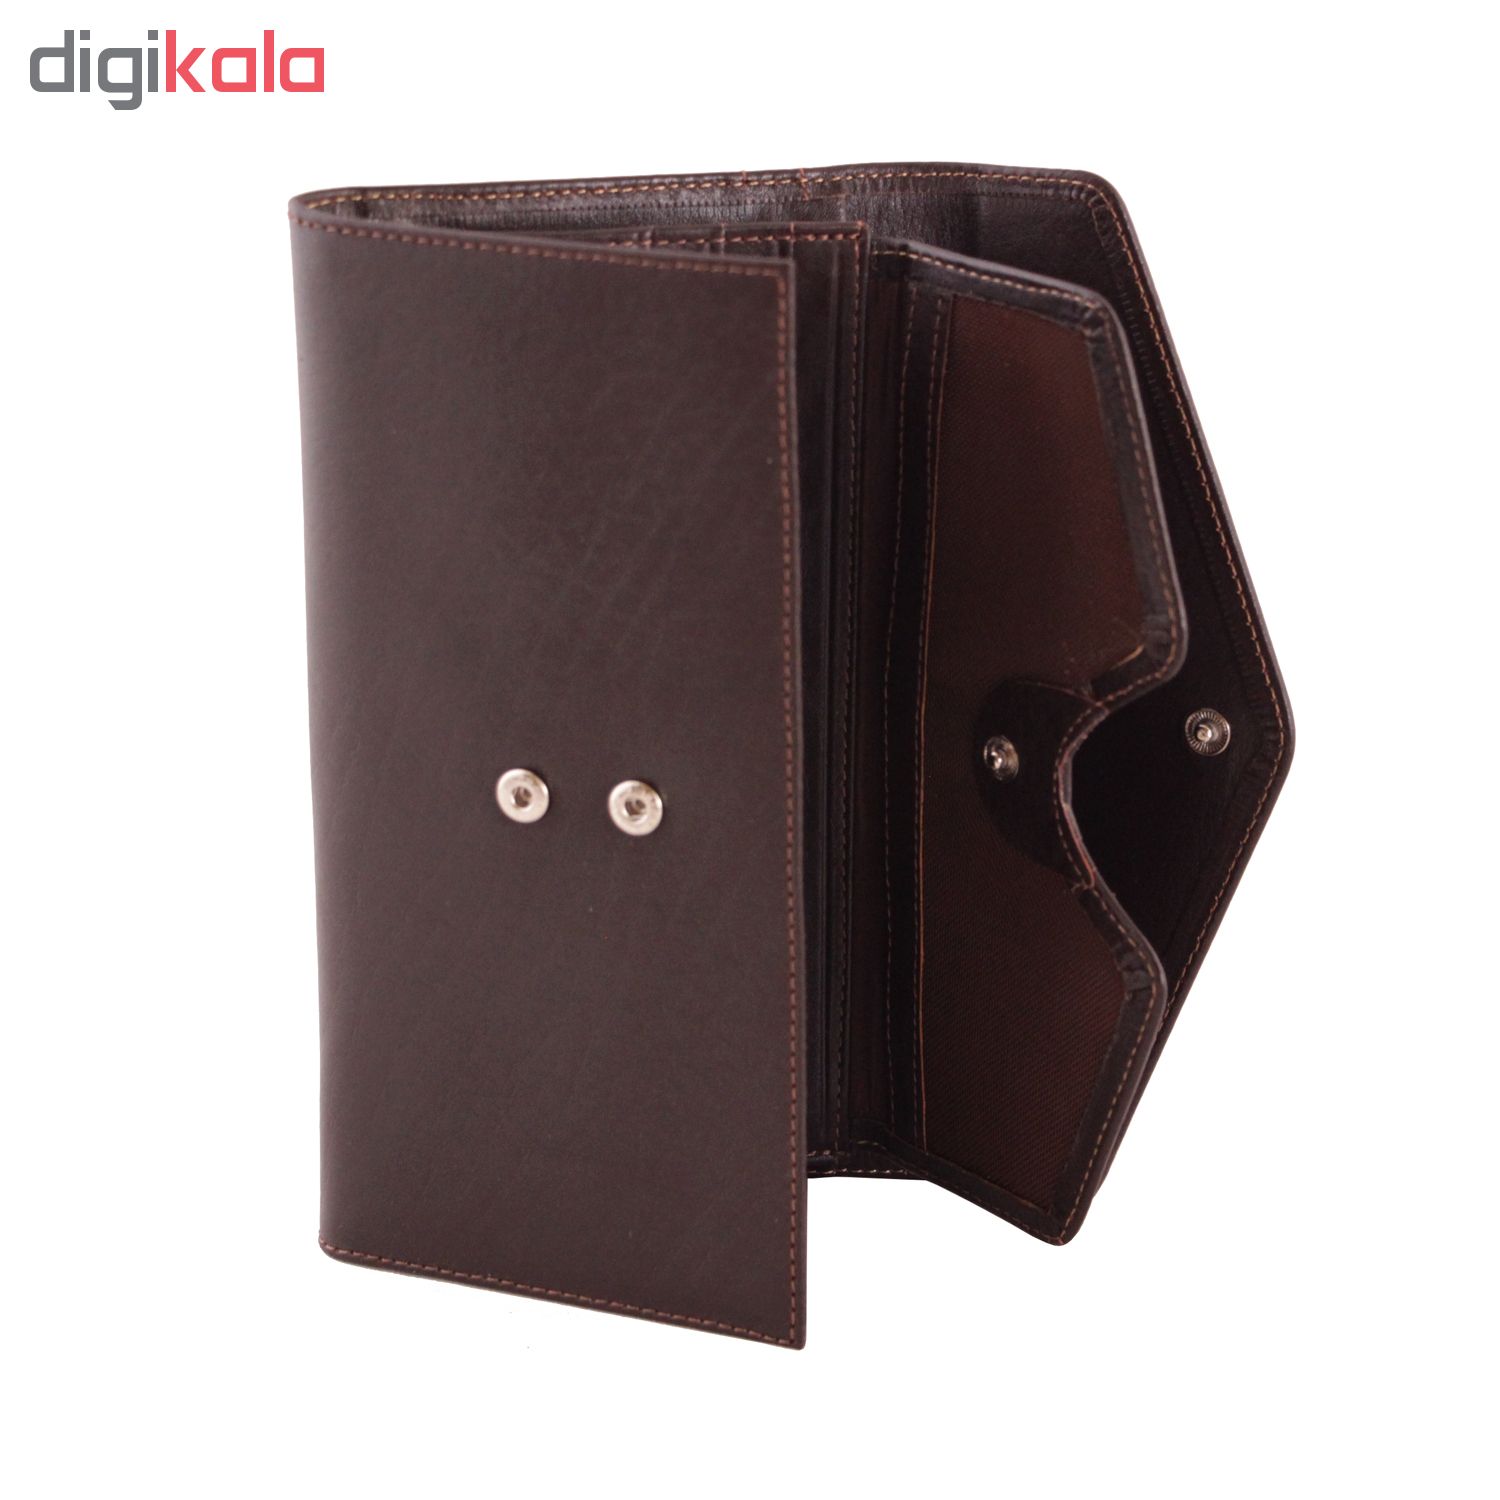 ADINCHARM natural leather wallet, model DM67 